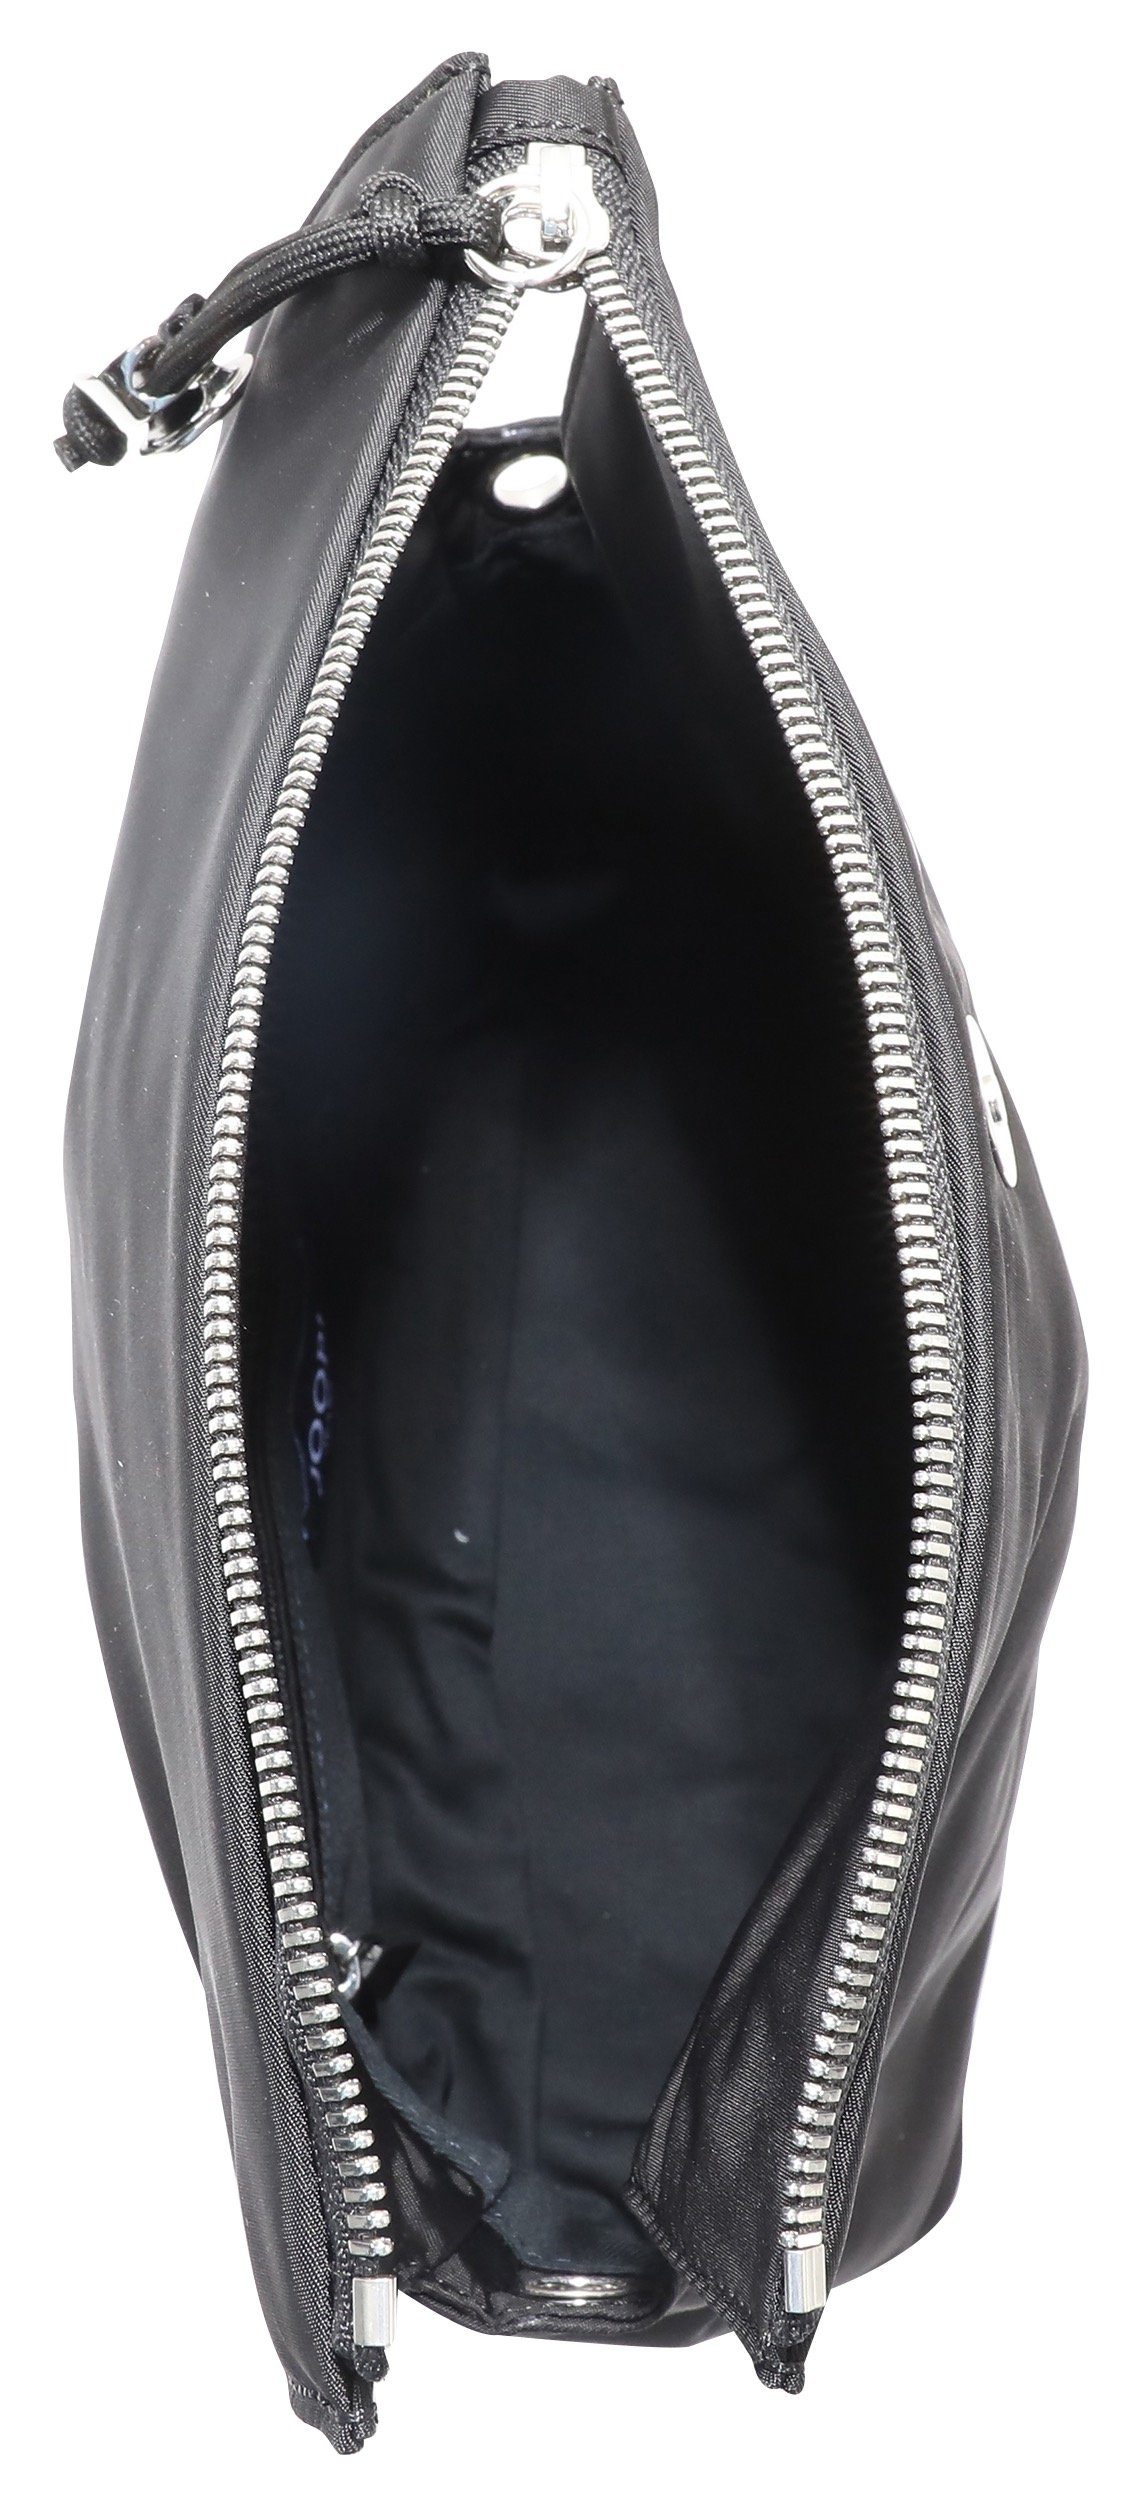 shoulderbag mit dem lietissimo shz, Jeans lani Umhängetasche Umhängeriemen Logo Schriftzug auf schwarz Joop